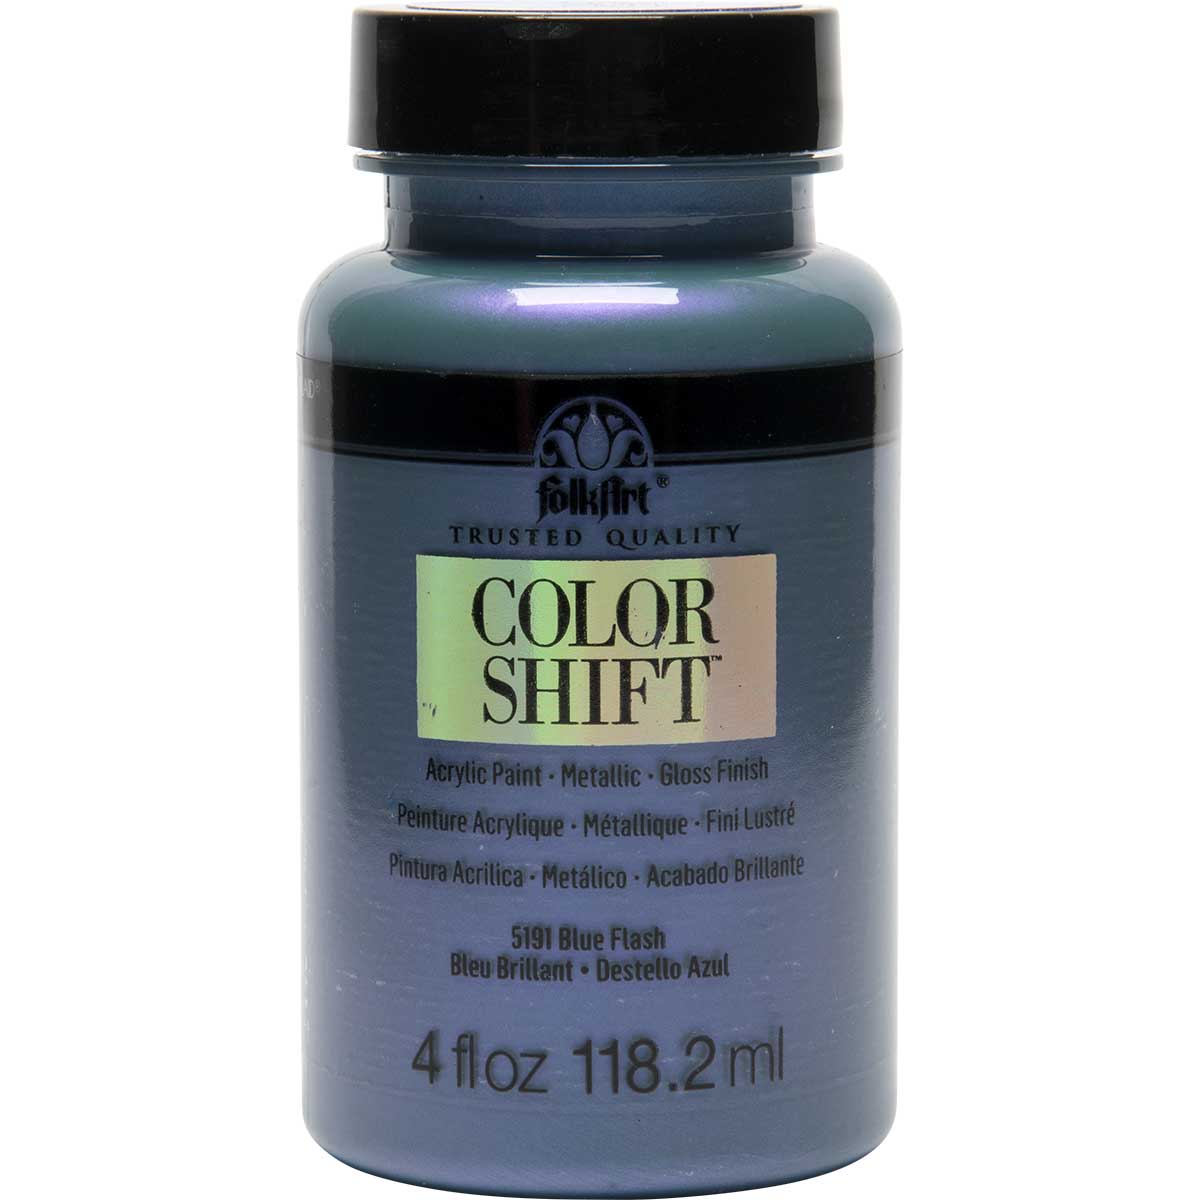 Color Shift Acrylic Paint - Blue Flash